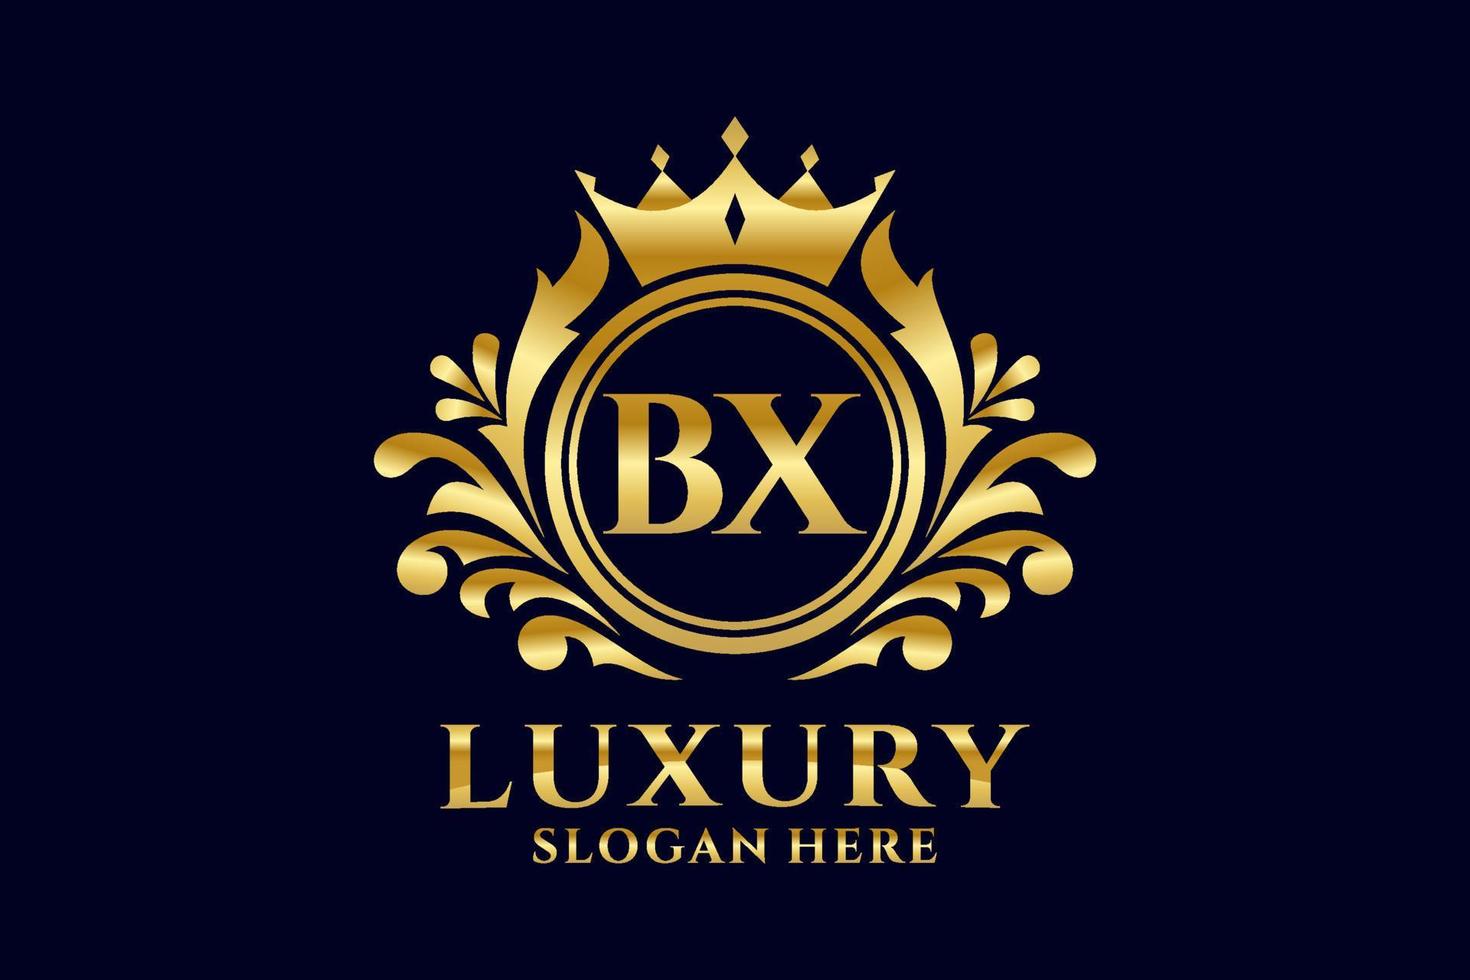 modèle initial de logo de luxe royal de lettre bx dans l'art vectoriel pour des projets de marque luxueux et d'autres illustrations vectorielles.